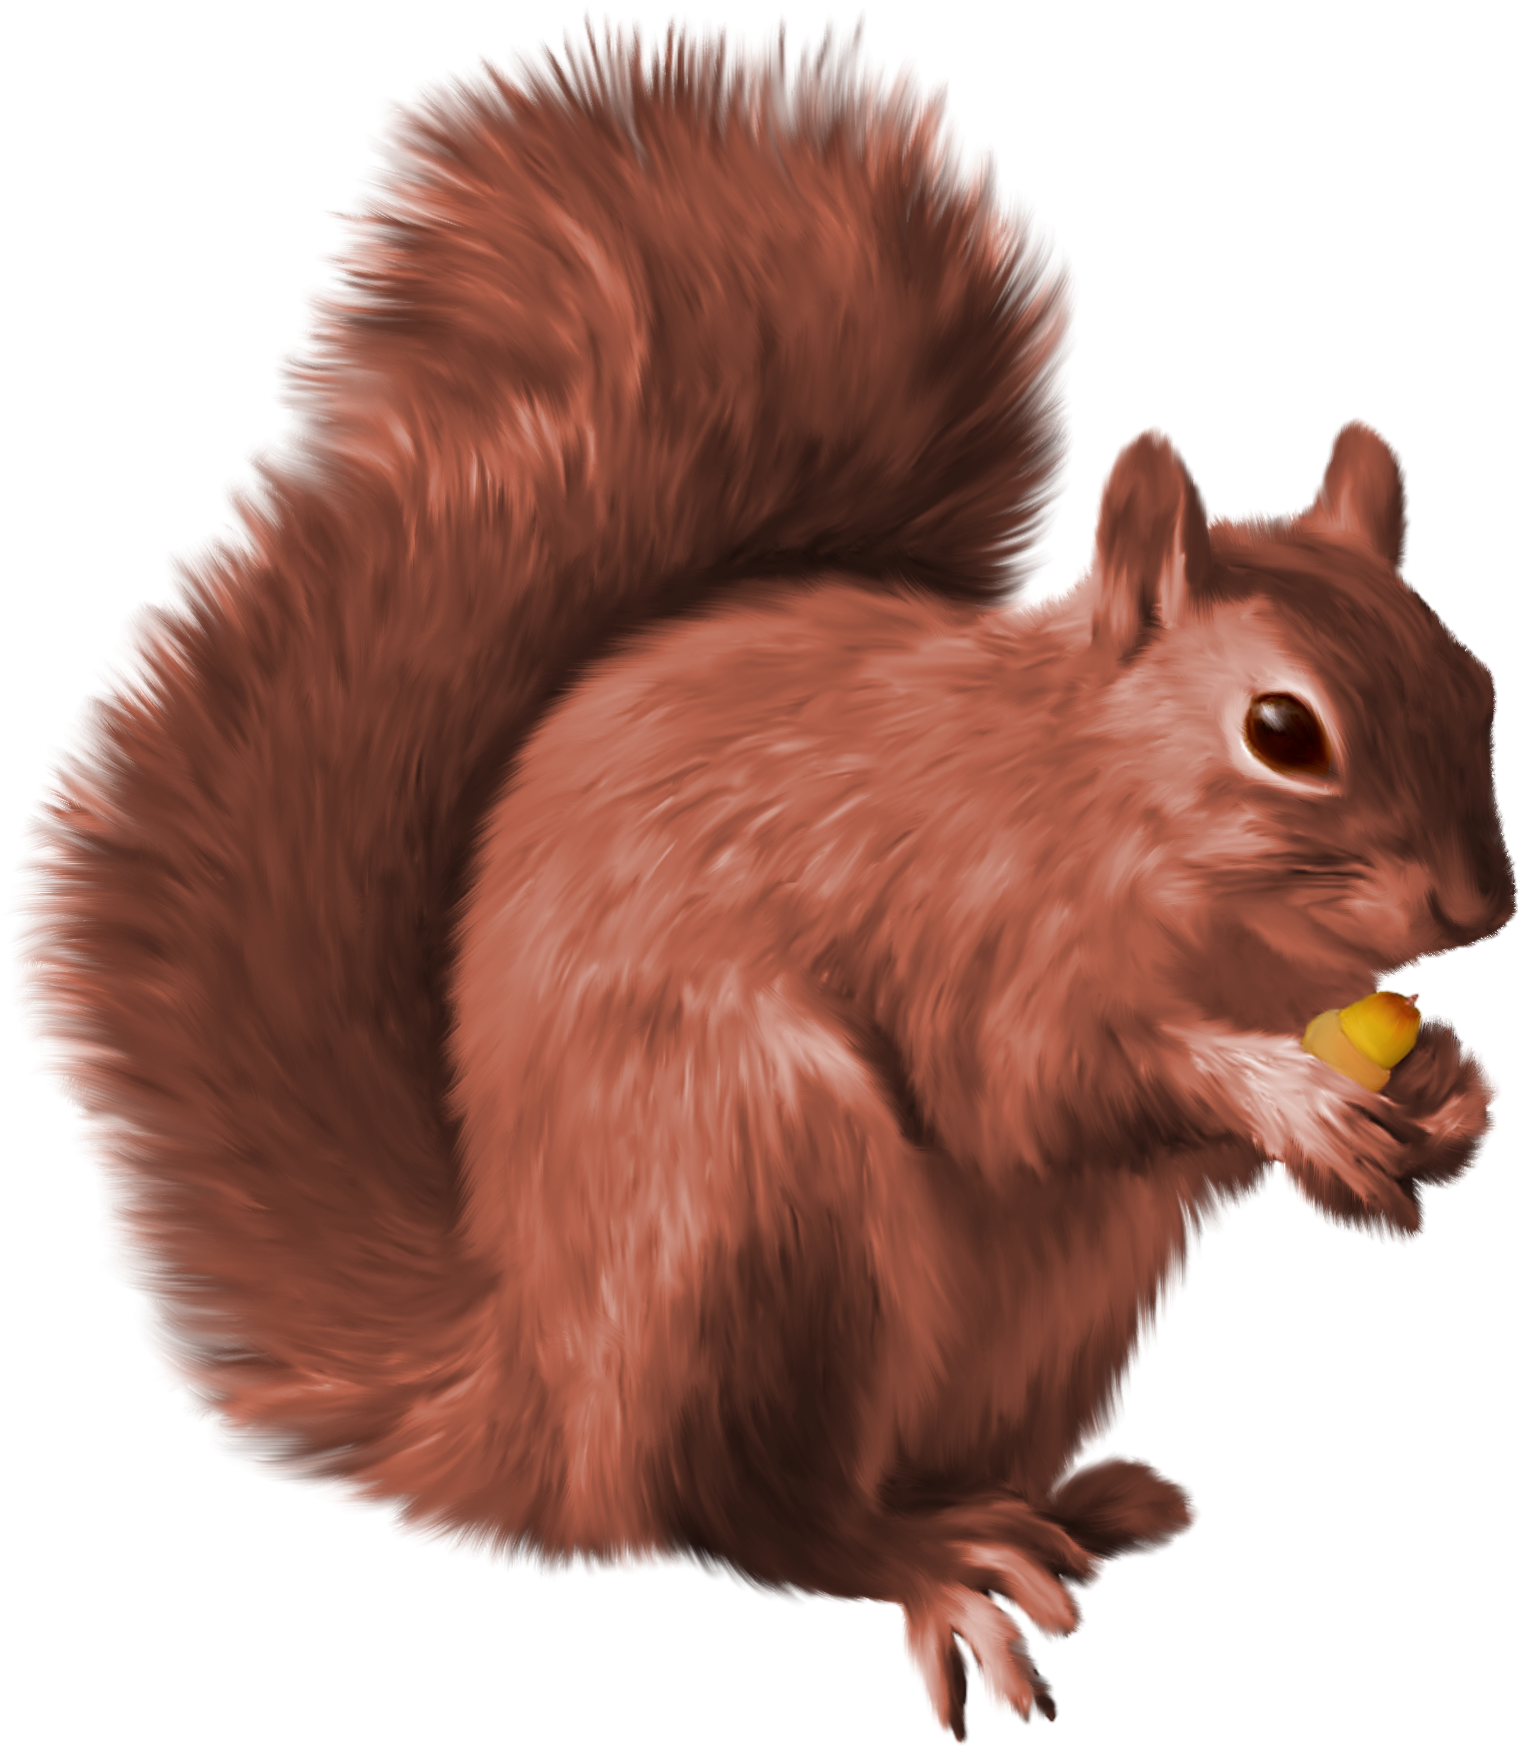 Squirrel-21